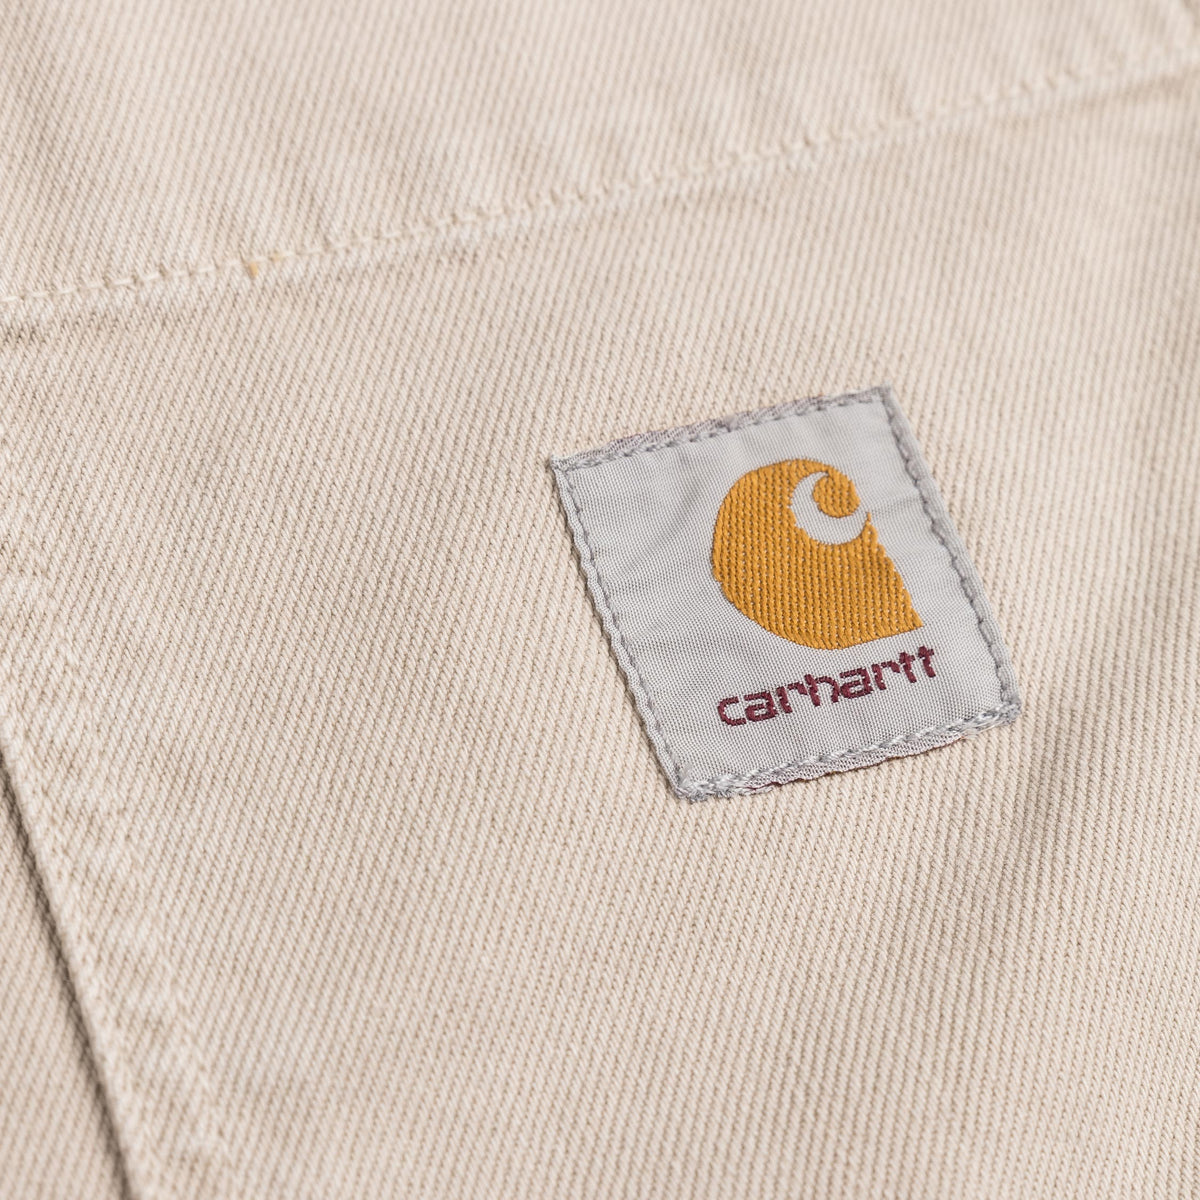 Carhartt WIP Garrison Coat » Buy online now!